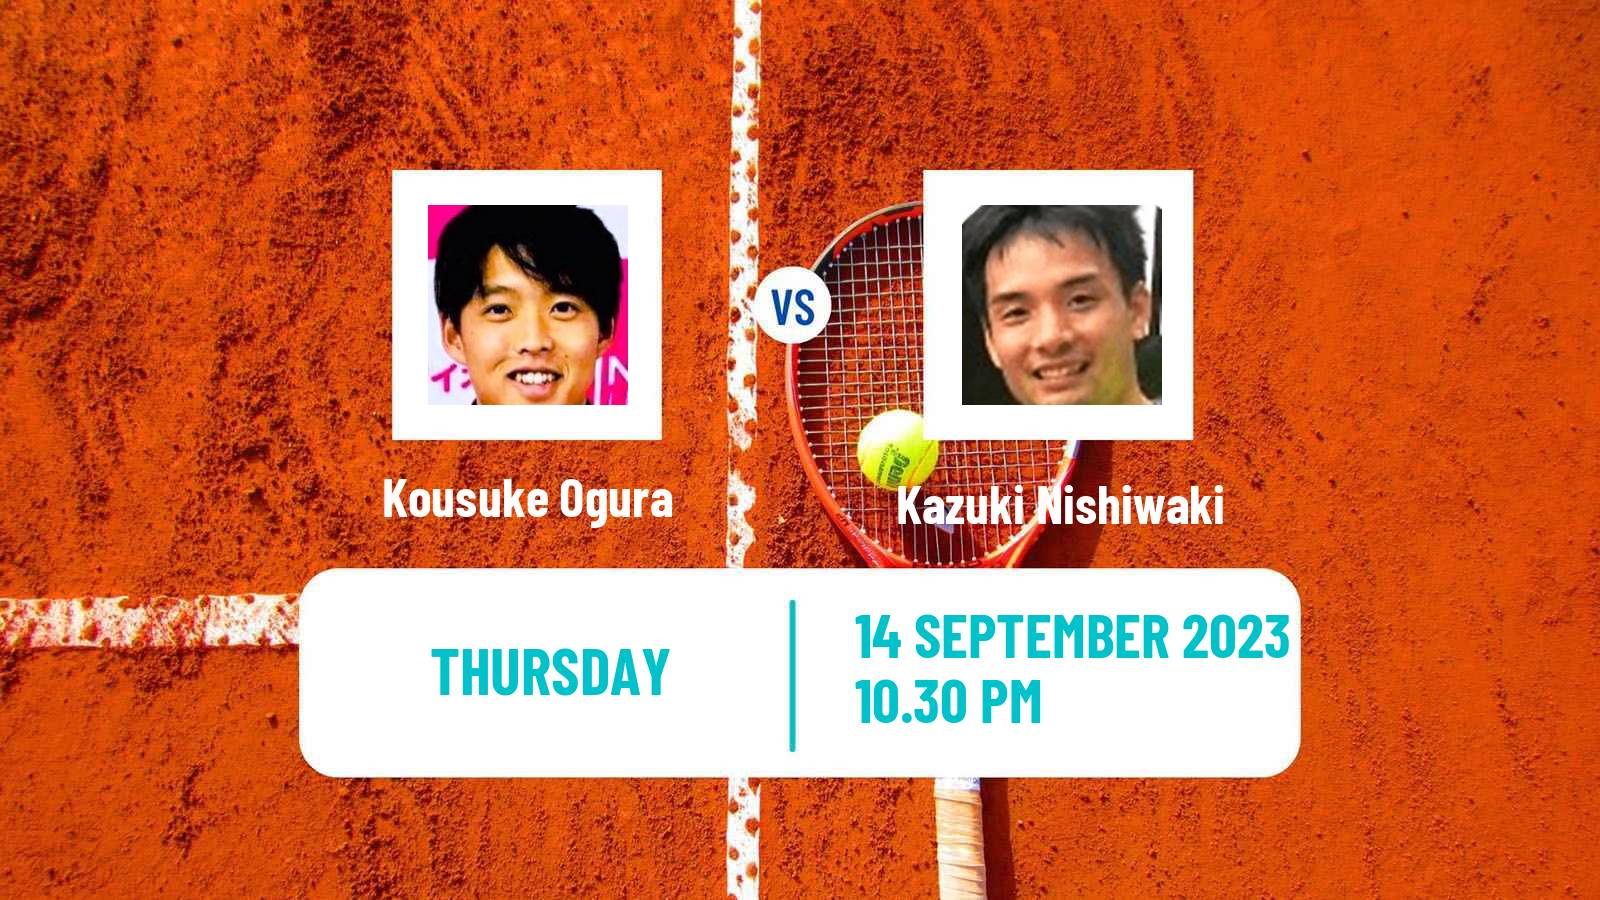 Tennis ITF M25 Sapporo 2 Men Kousuke Ogura - Kazuki Nishiwaki